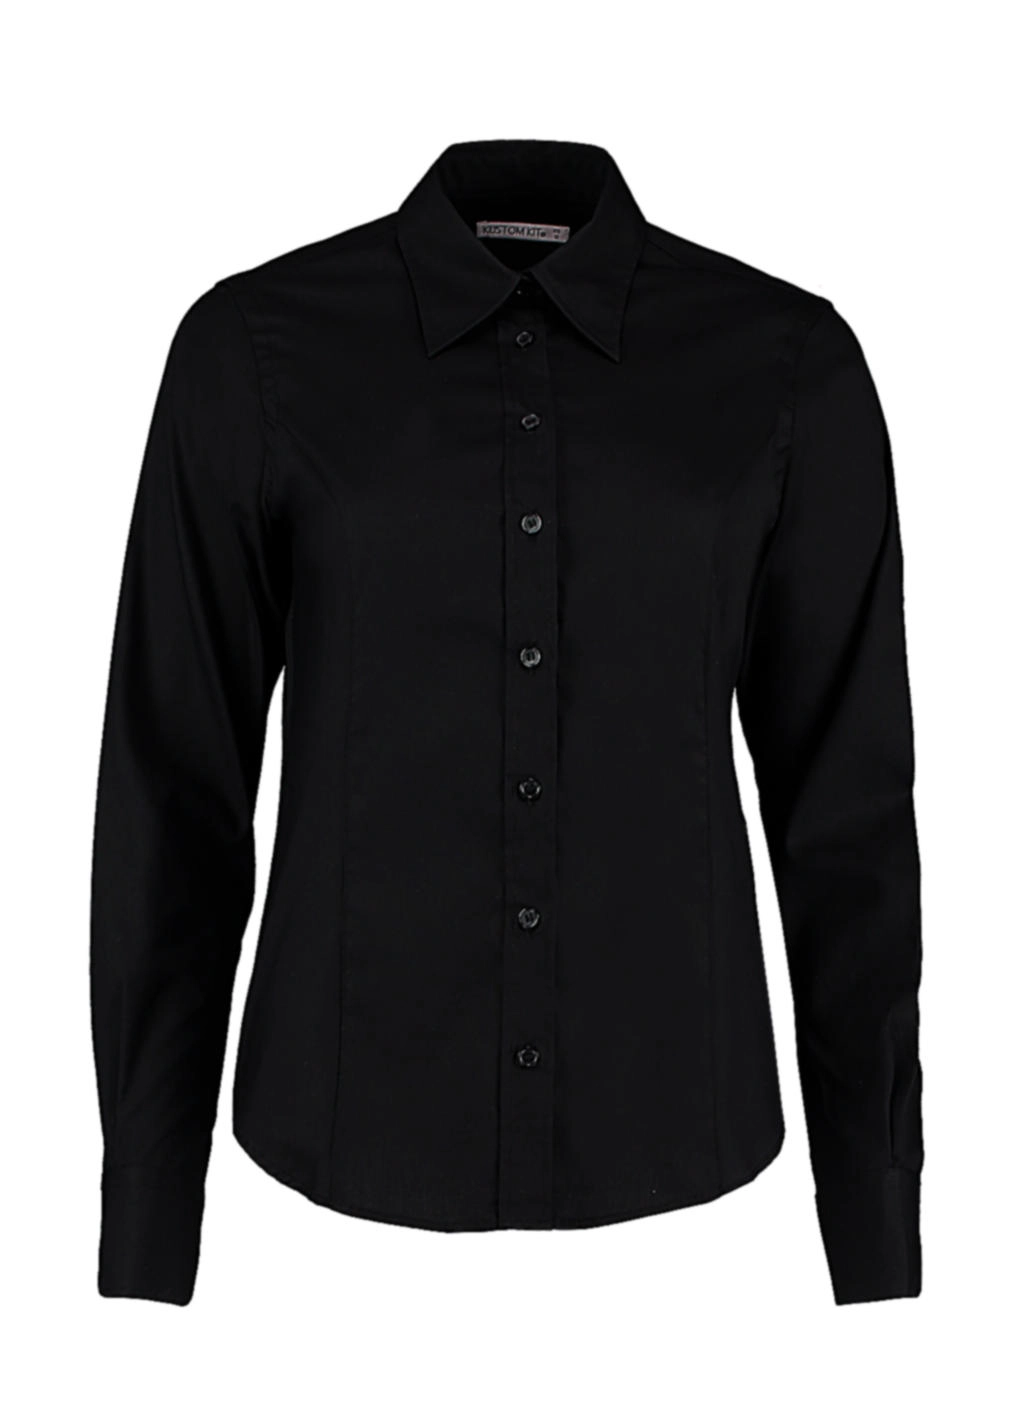 Women`s Tailored Fit Premium Oxford Shirt zum Besticken und Bedrucken in der Farbe Black mit Ihren Logo, Schriftzug oder Motiv.